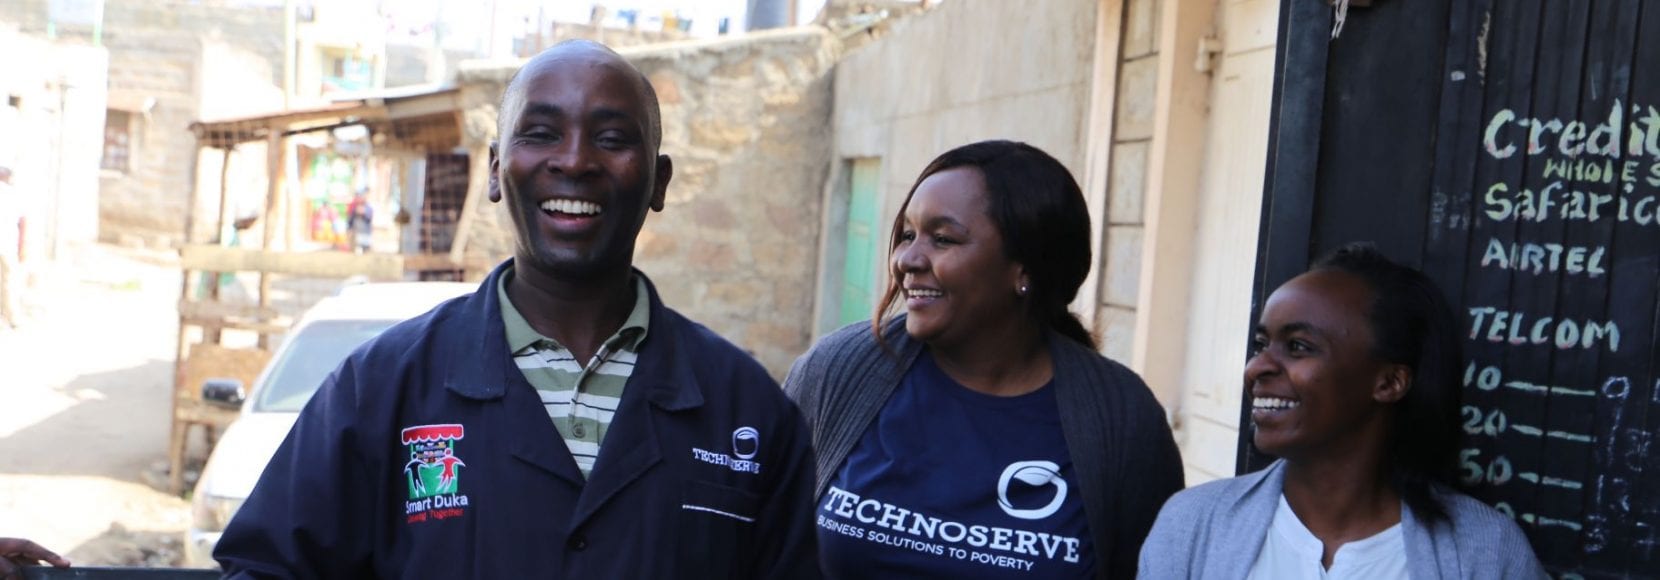 Duka owners smiling in Kenya